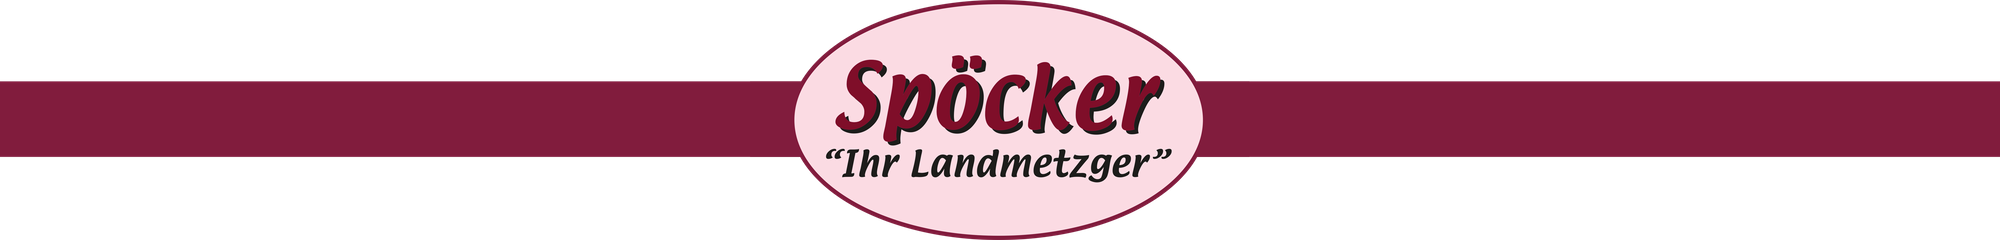 Landmetzgerei Spöcker GmbH 